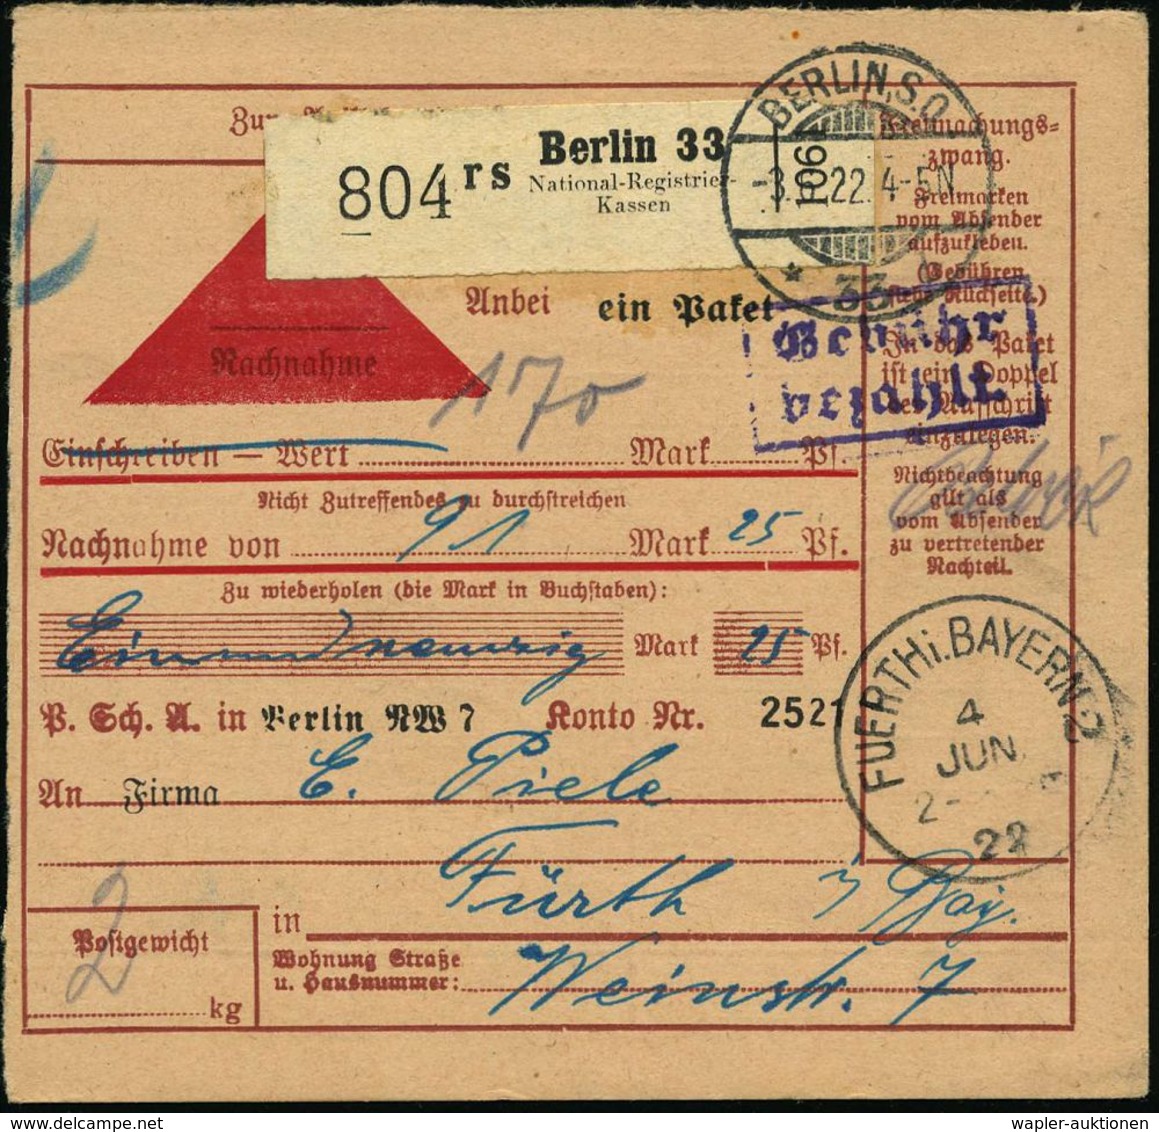 NUMISPHILATELIE / GELDSCHEINE / MÜNZEN : Berlin 33/ Rs/ National-Registrier-/ Kassen 1922 (3.6.) Selbstbucher-Paketzette - Ohne Zuordnung